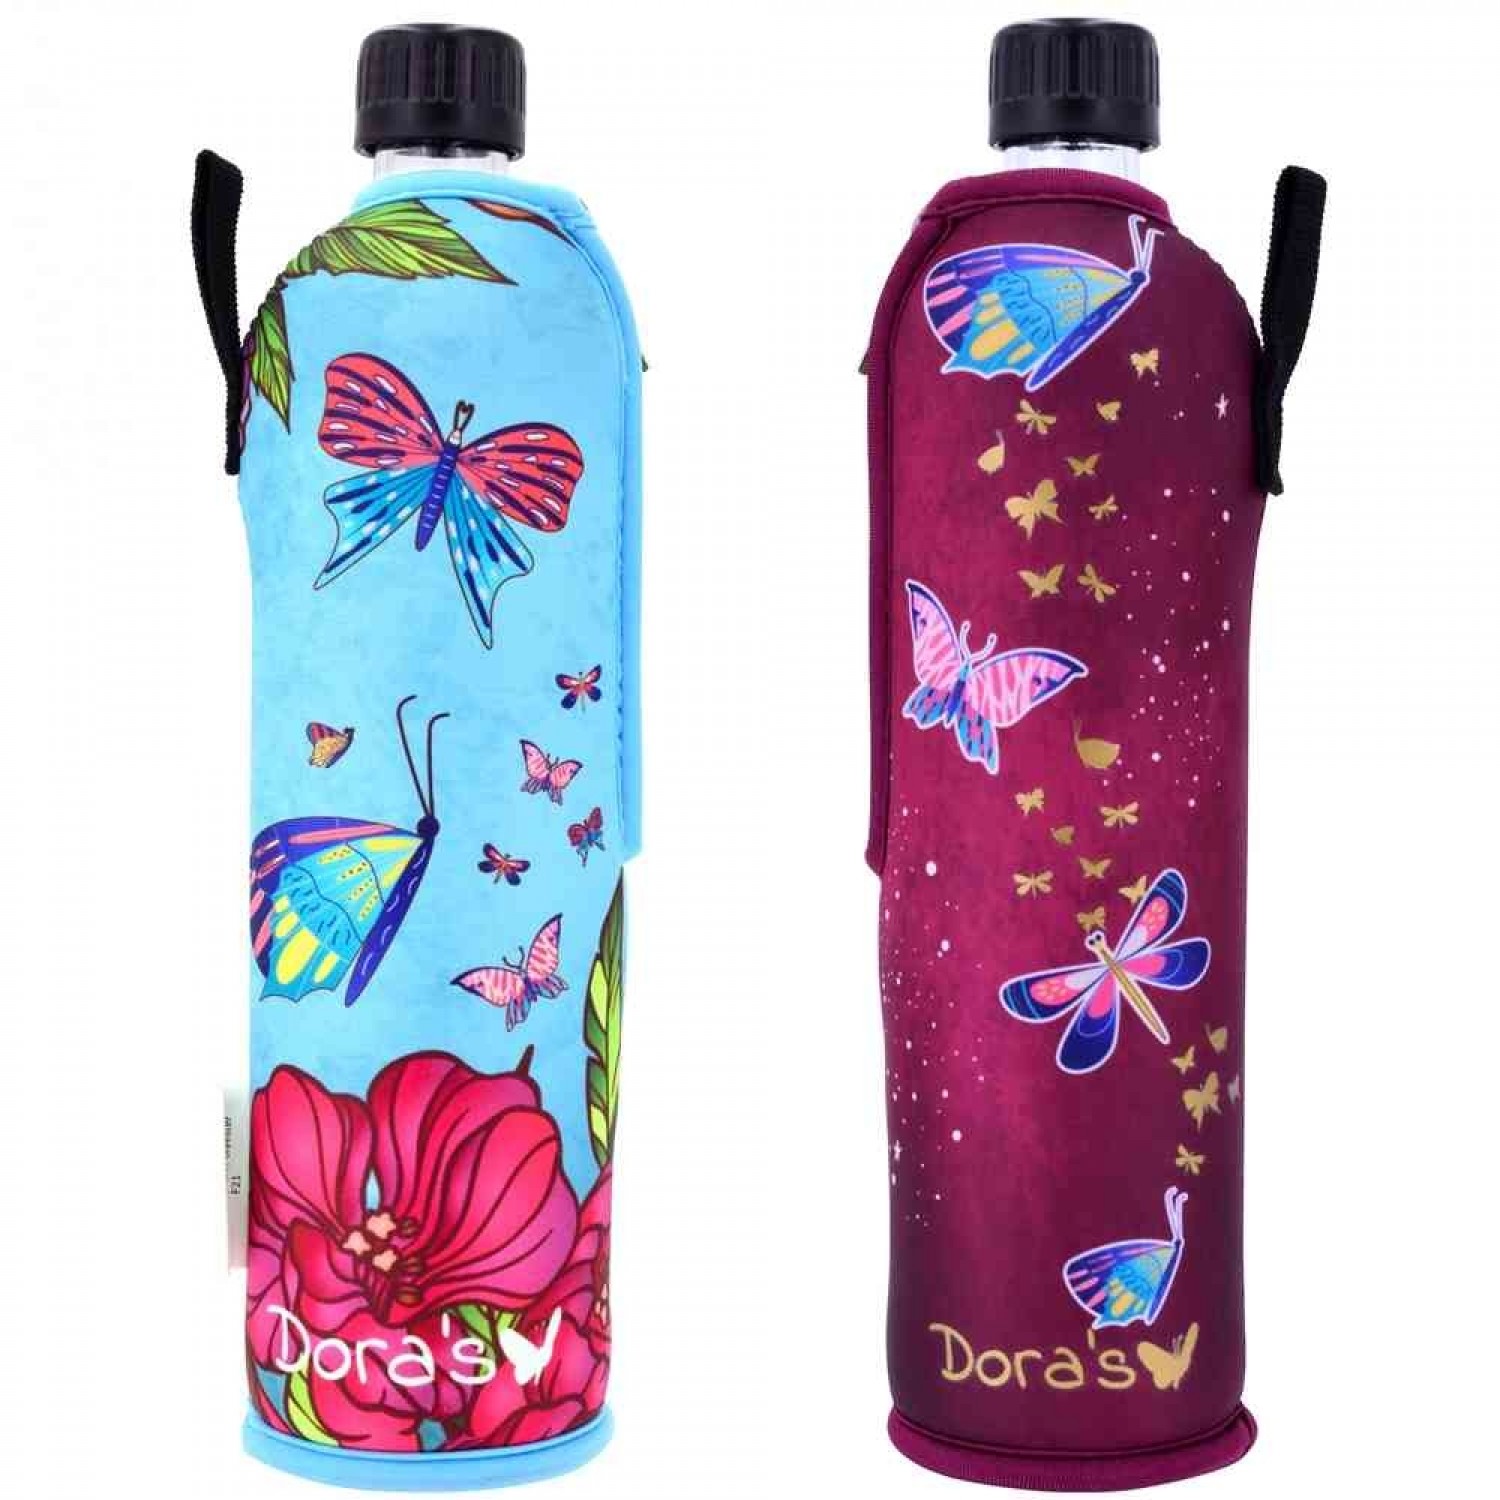 Dora's Trinkflasche mit Schmetterling Neoprenbezug